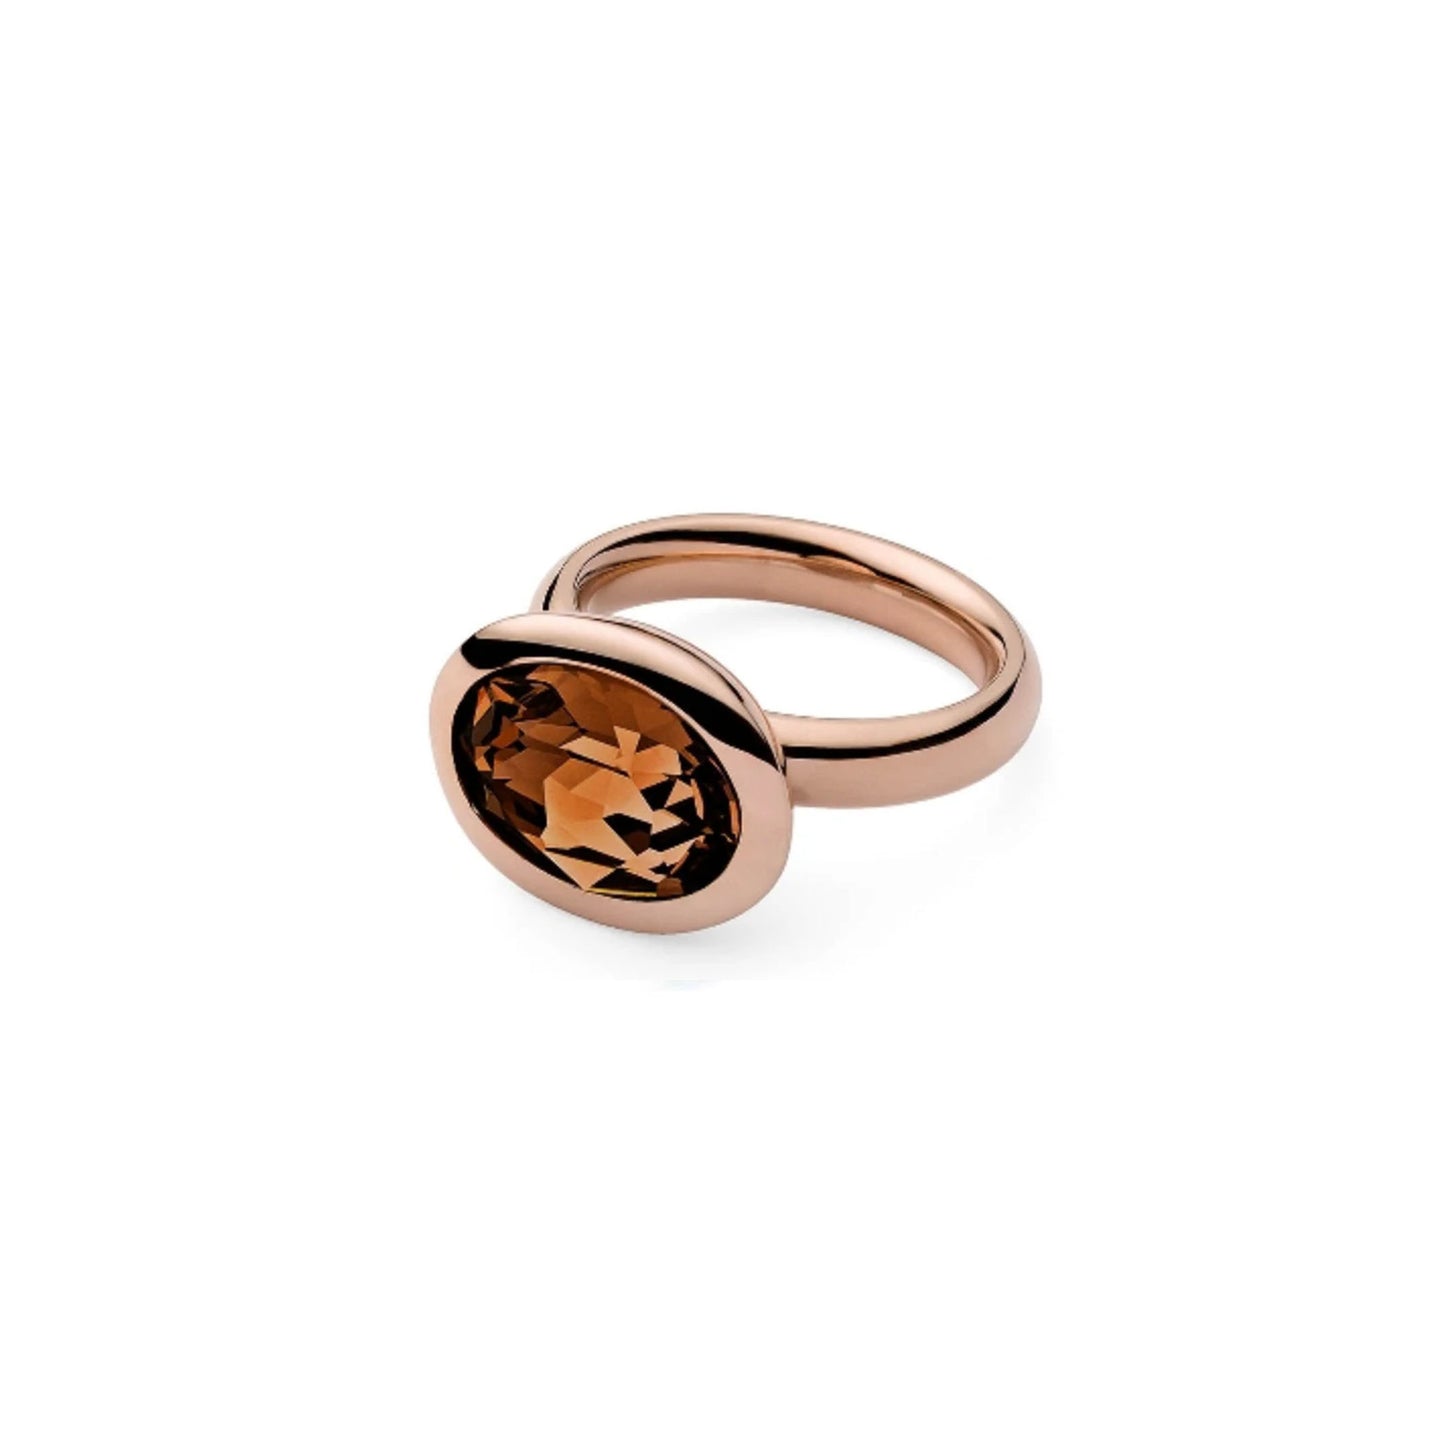 Tivola Ring in Rose Gold - Topaz